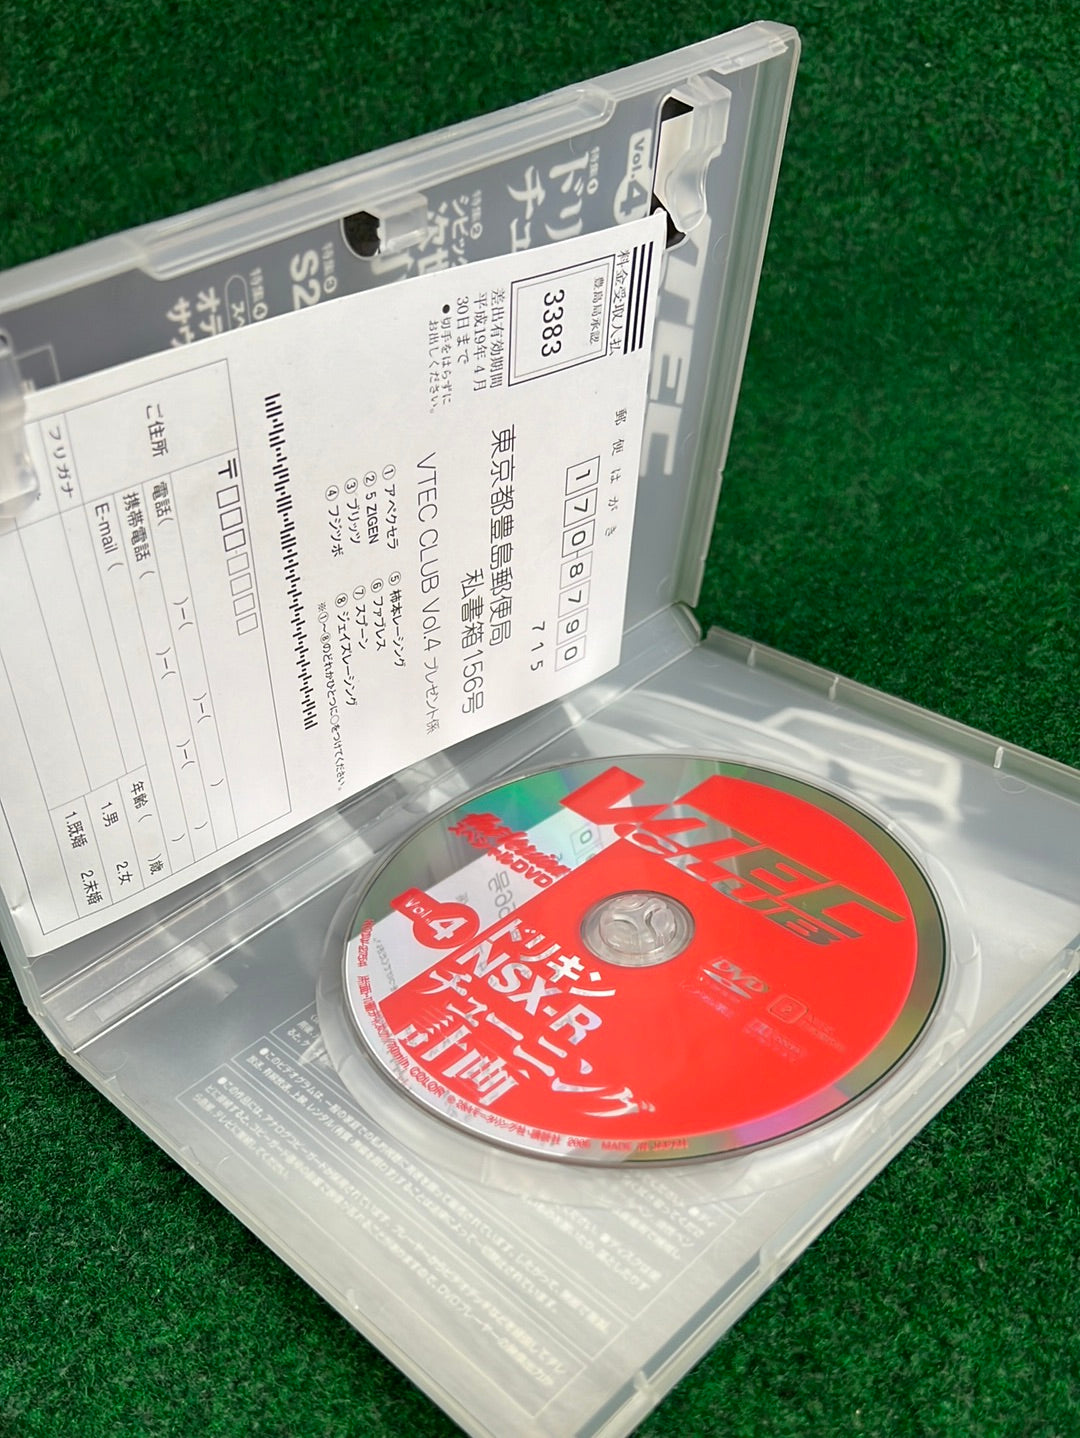 Hot Version DVD: VTEC CLUB - Vol. 4